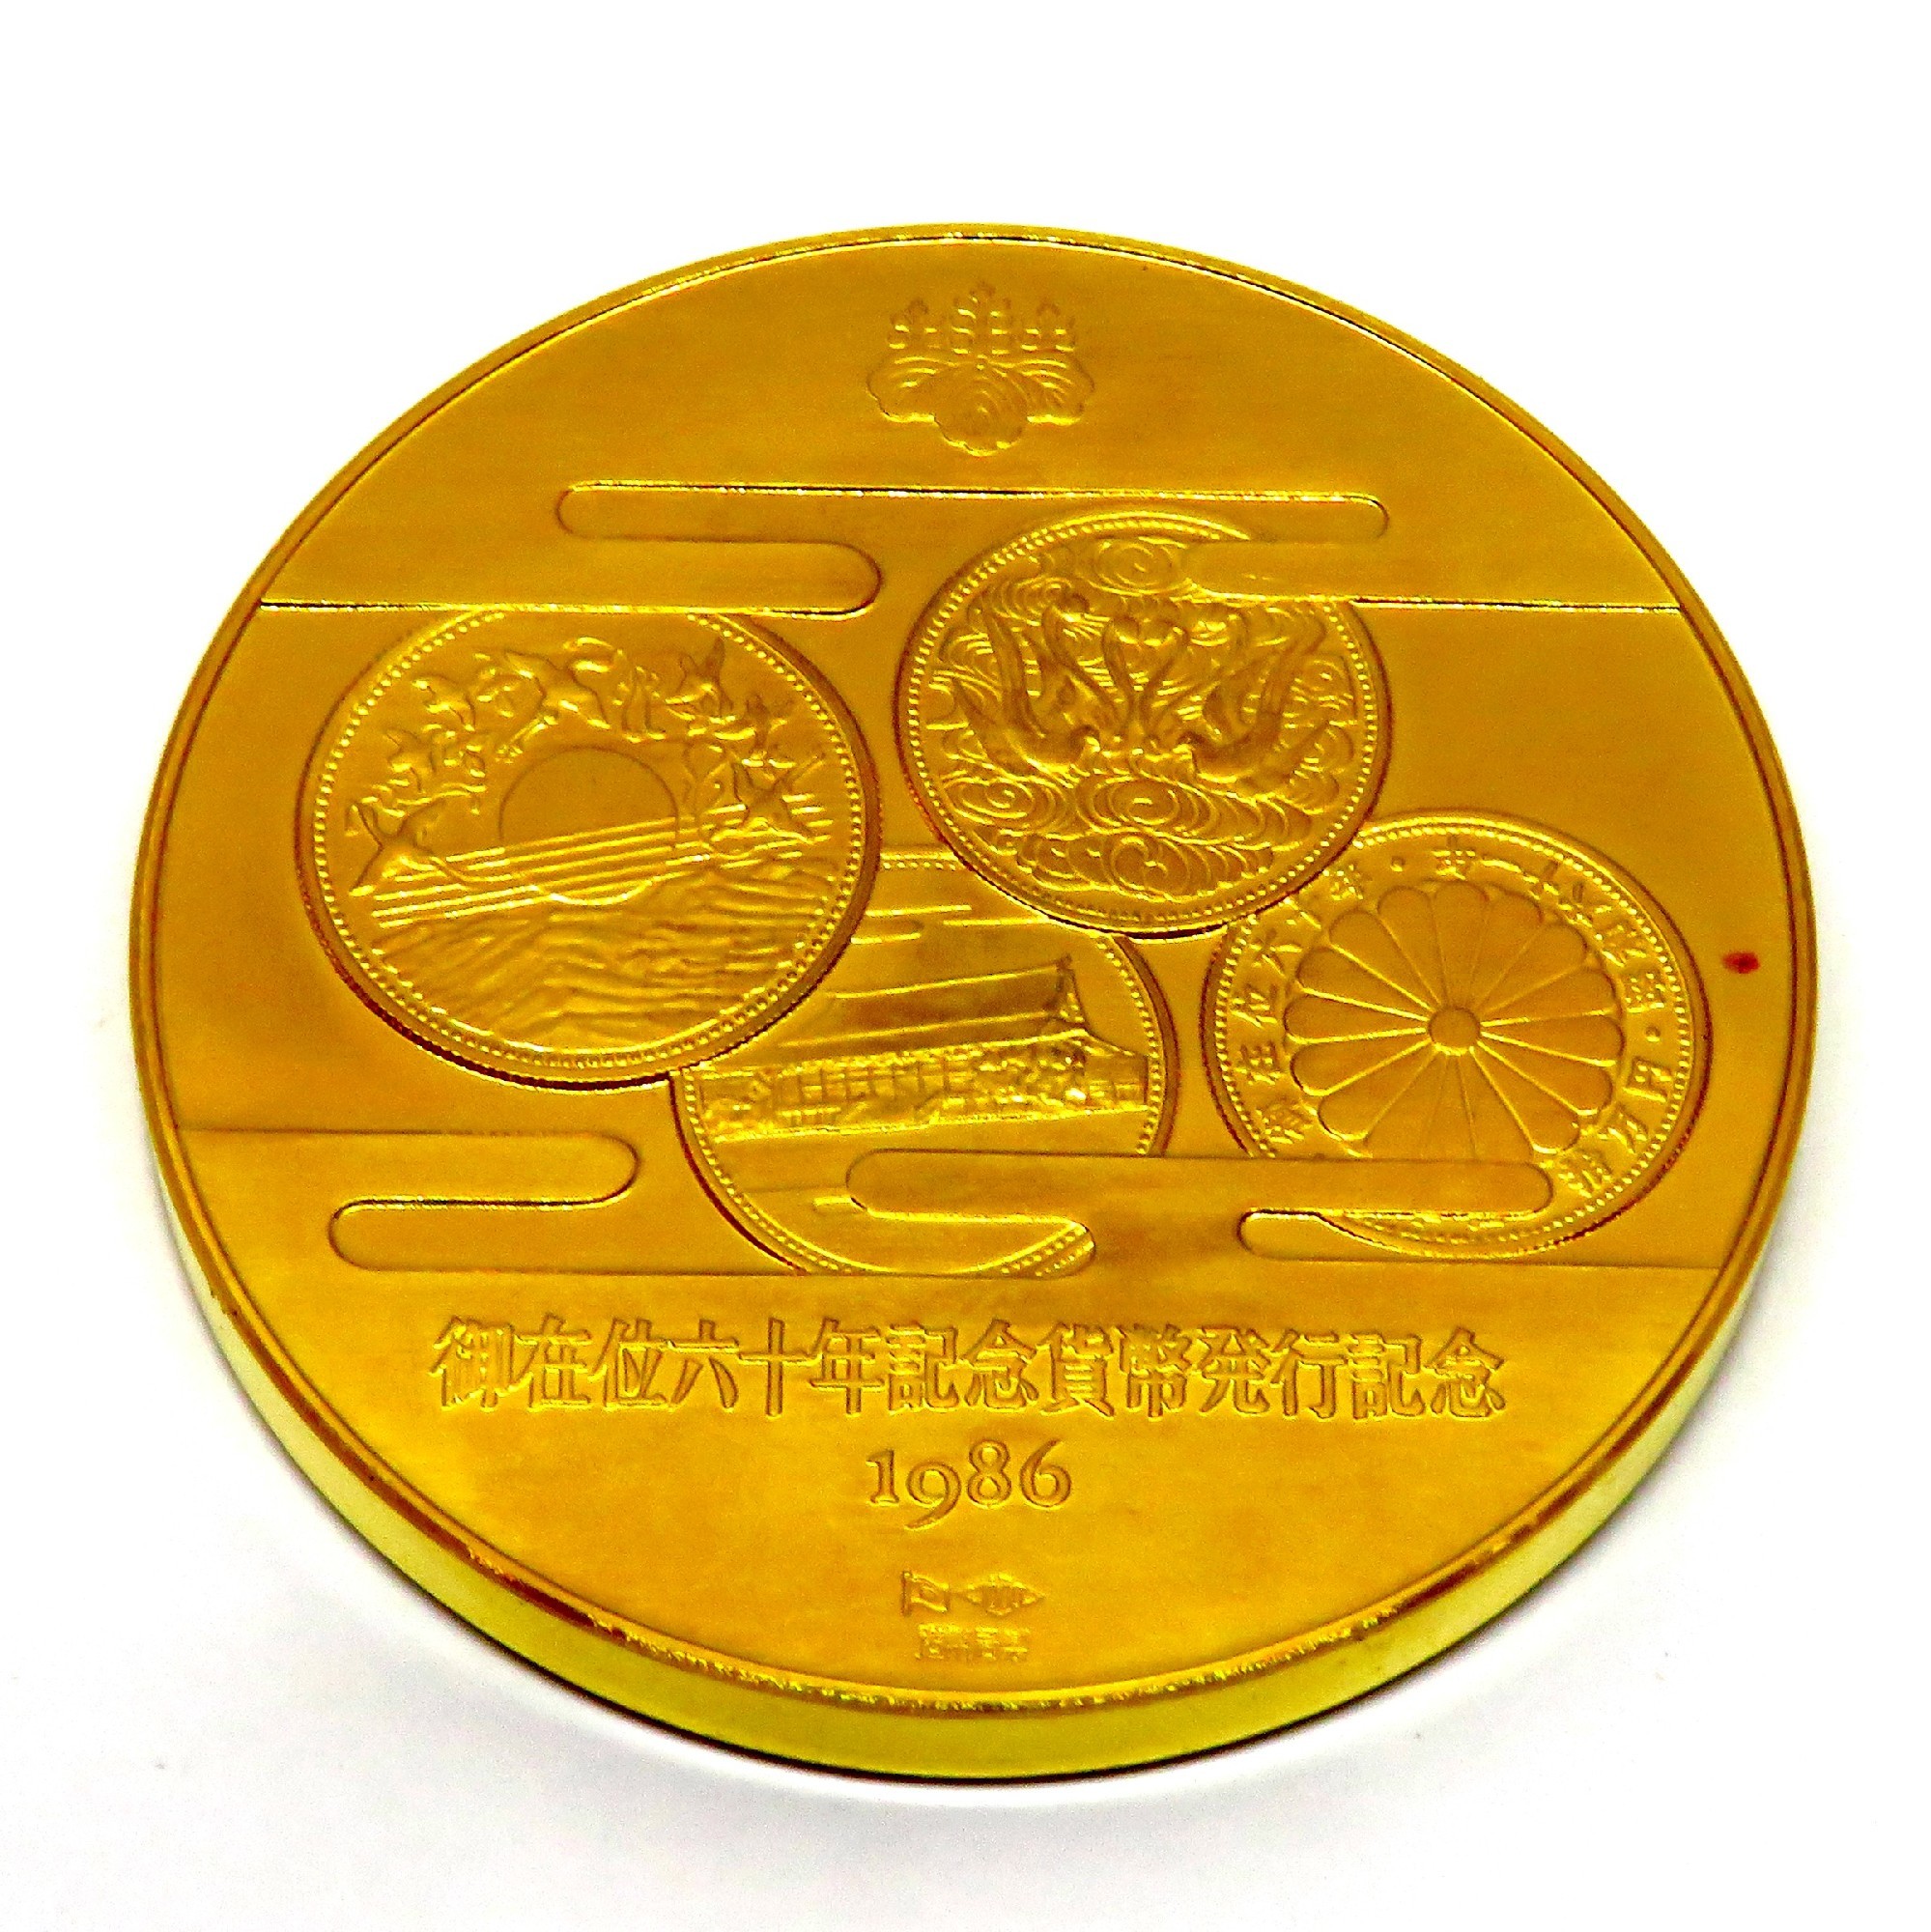 天皇陛下御在位六十年記念硬貨☆金貨と銀貨の抽選引換え券 - 旧貨幣 